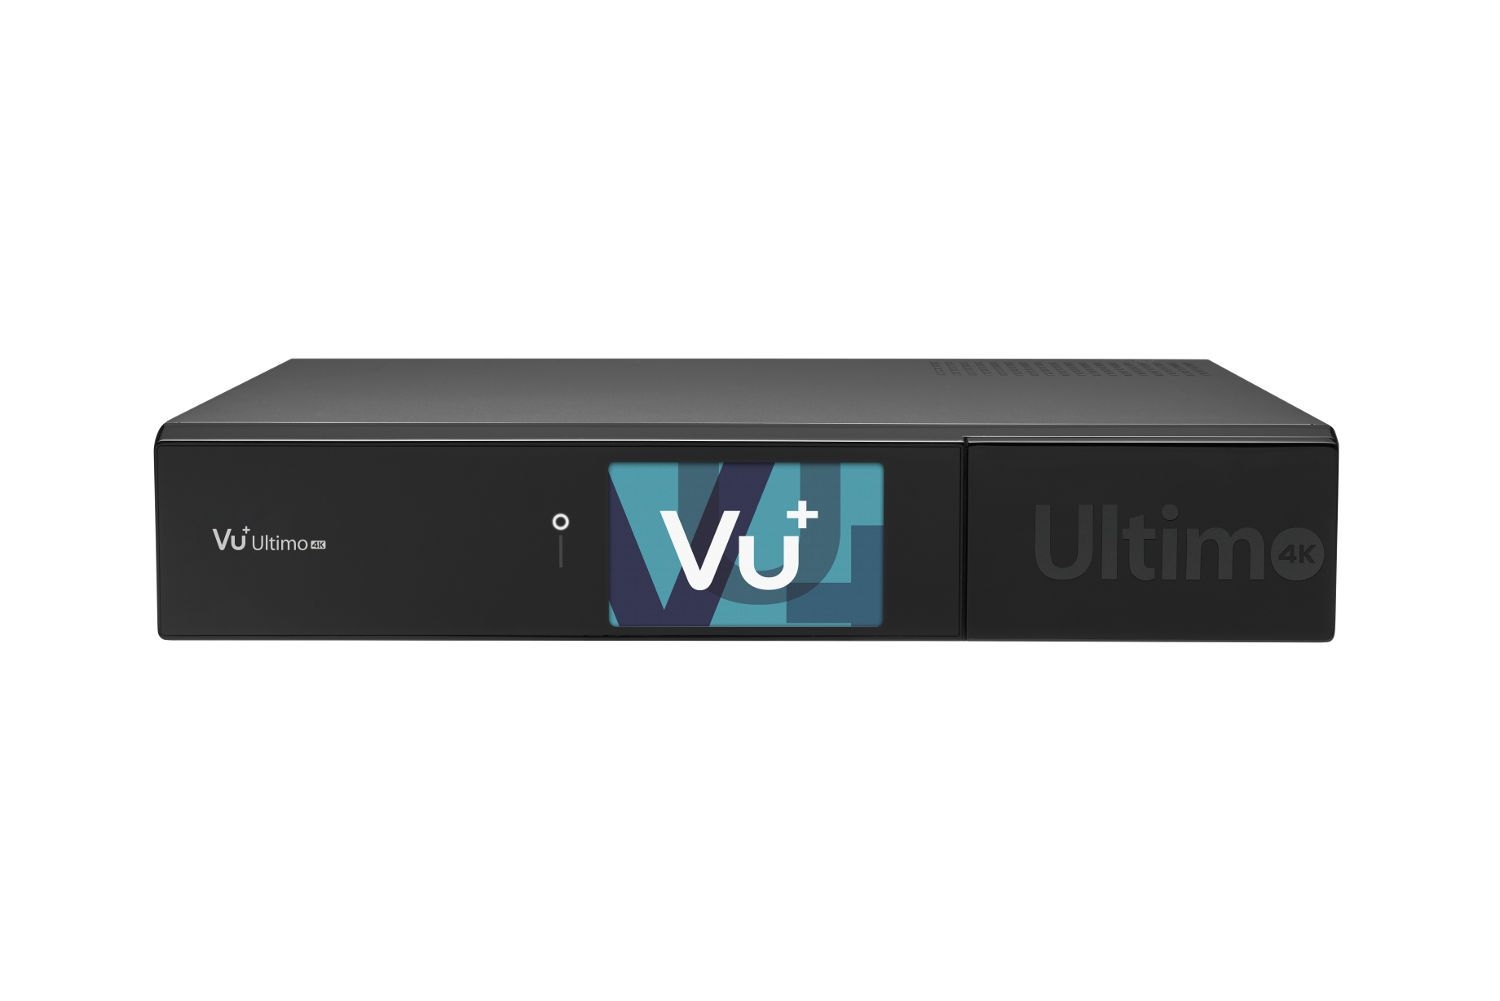 VU+ Ultimo 4K 1x DVB-C FBC / 1x DVB-S2 Tuner 3 TB HDD Linux Receiver UHD 2160p